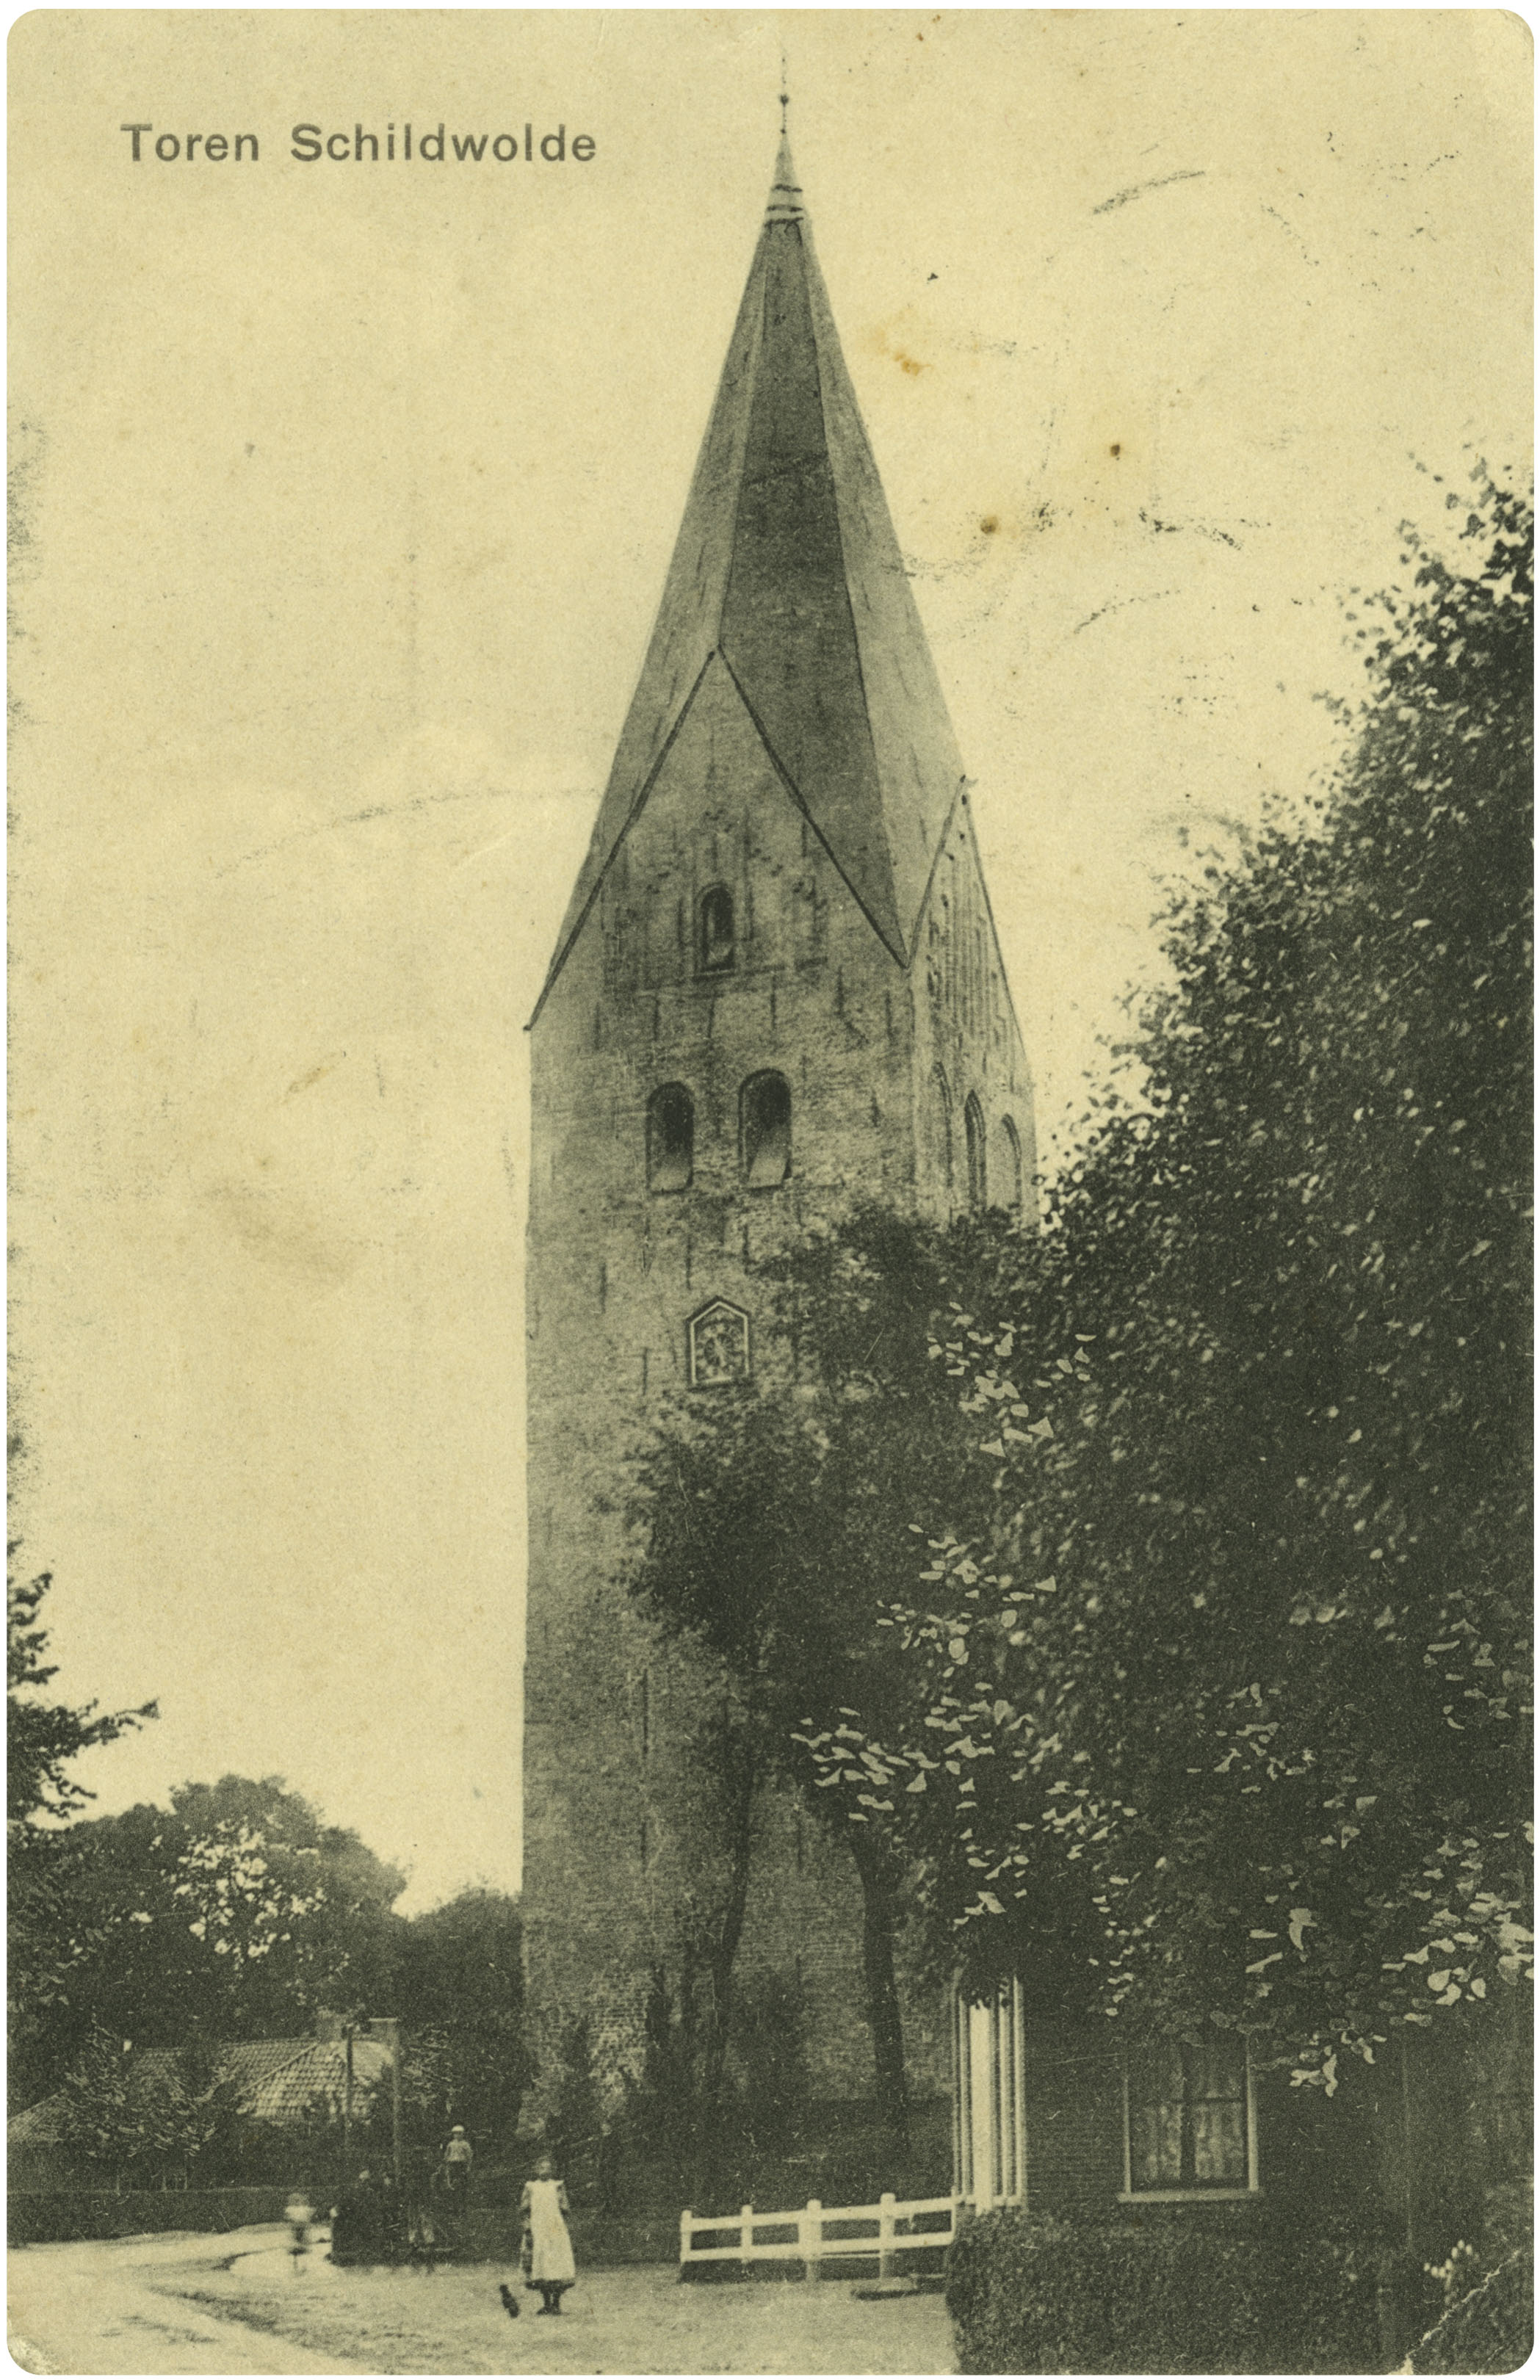 De juffertoren in Schildwolde, met op de voorgrond een meisje en een grote boom.